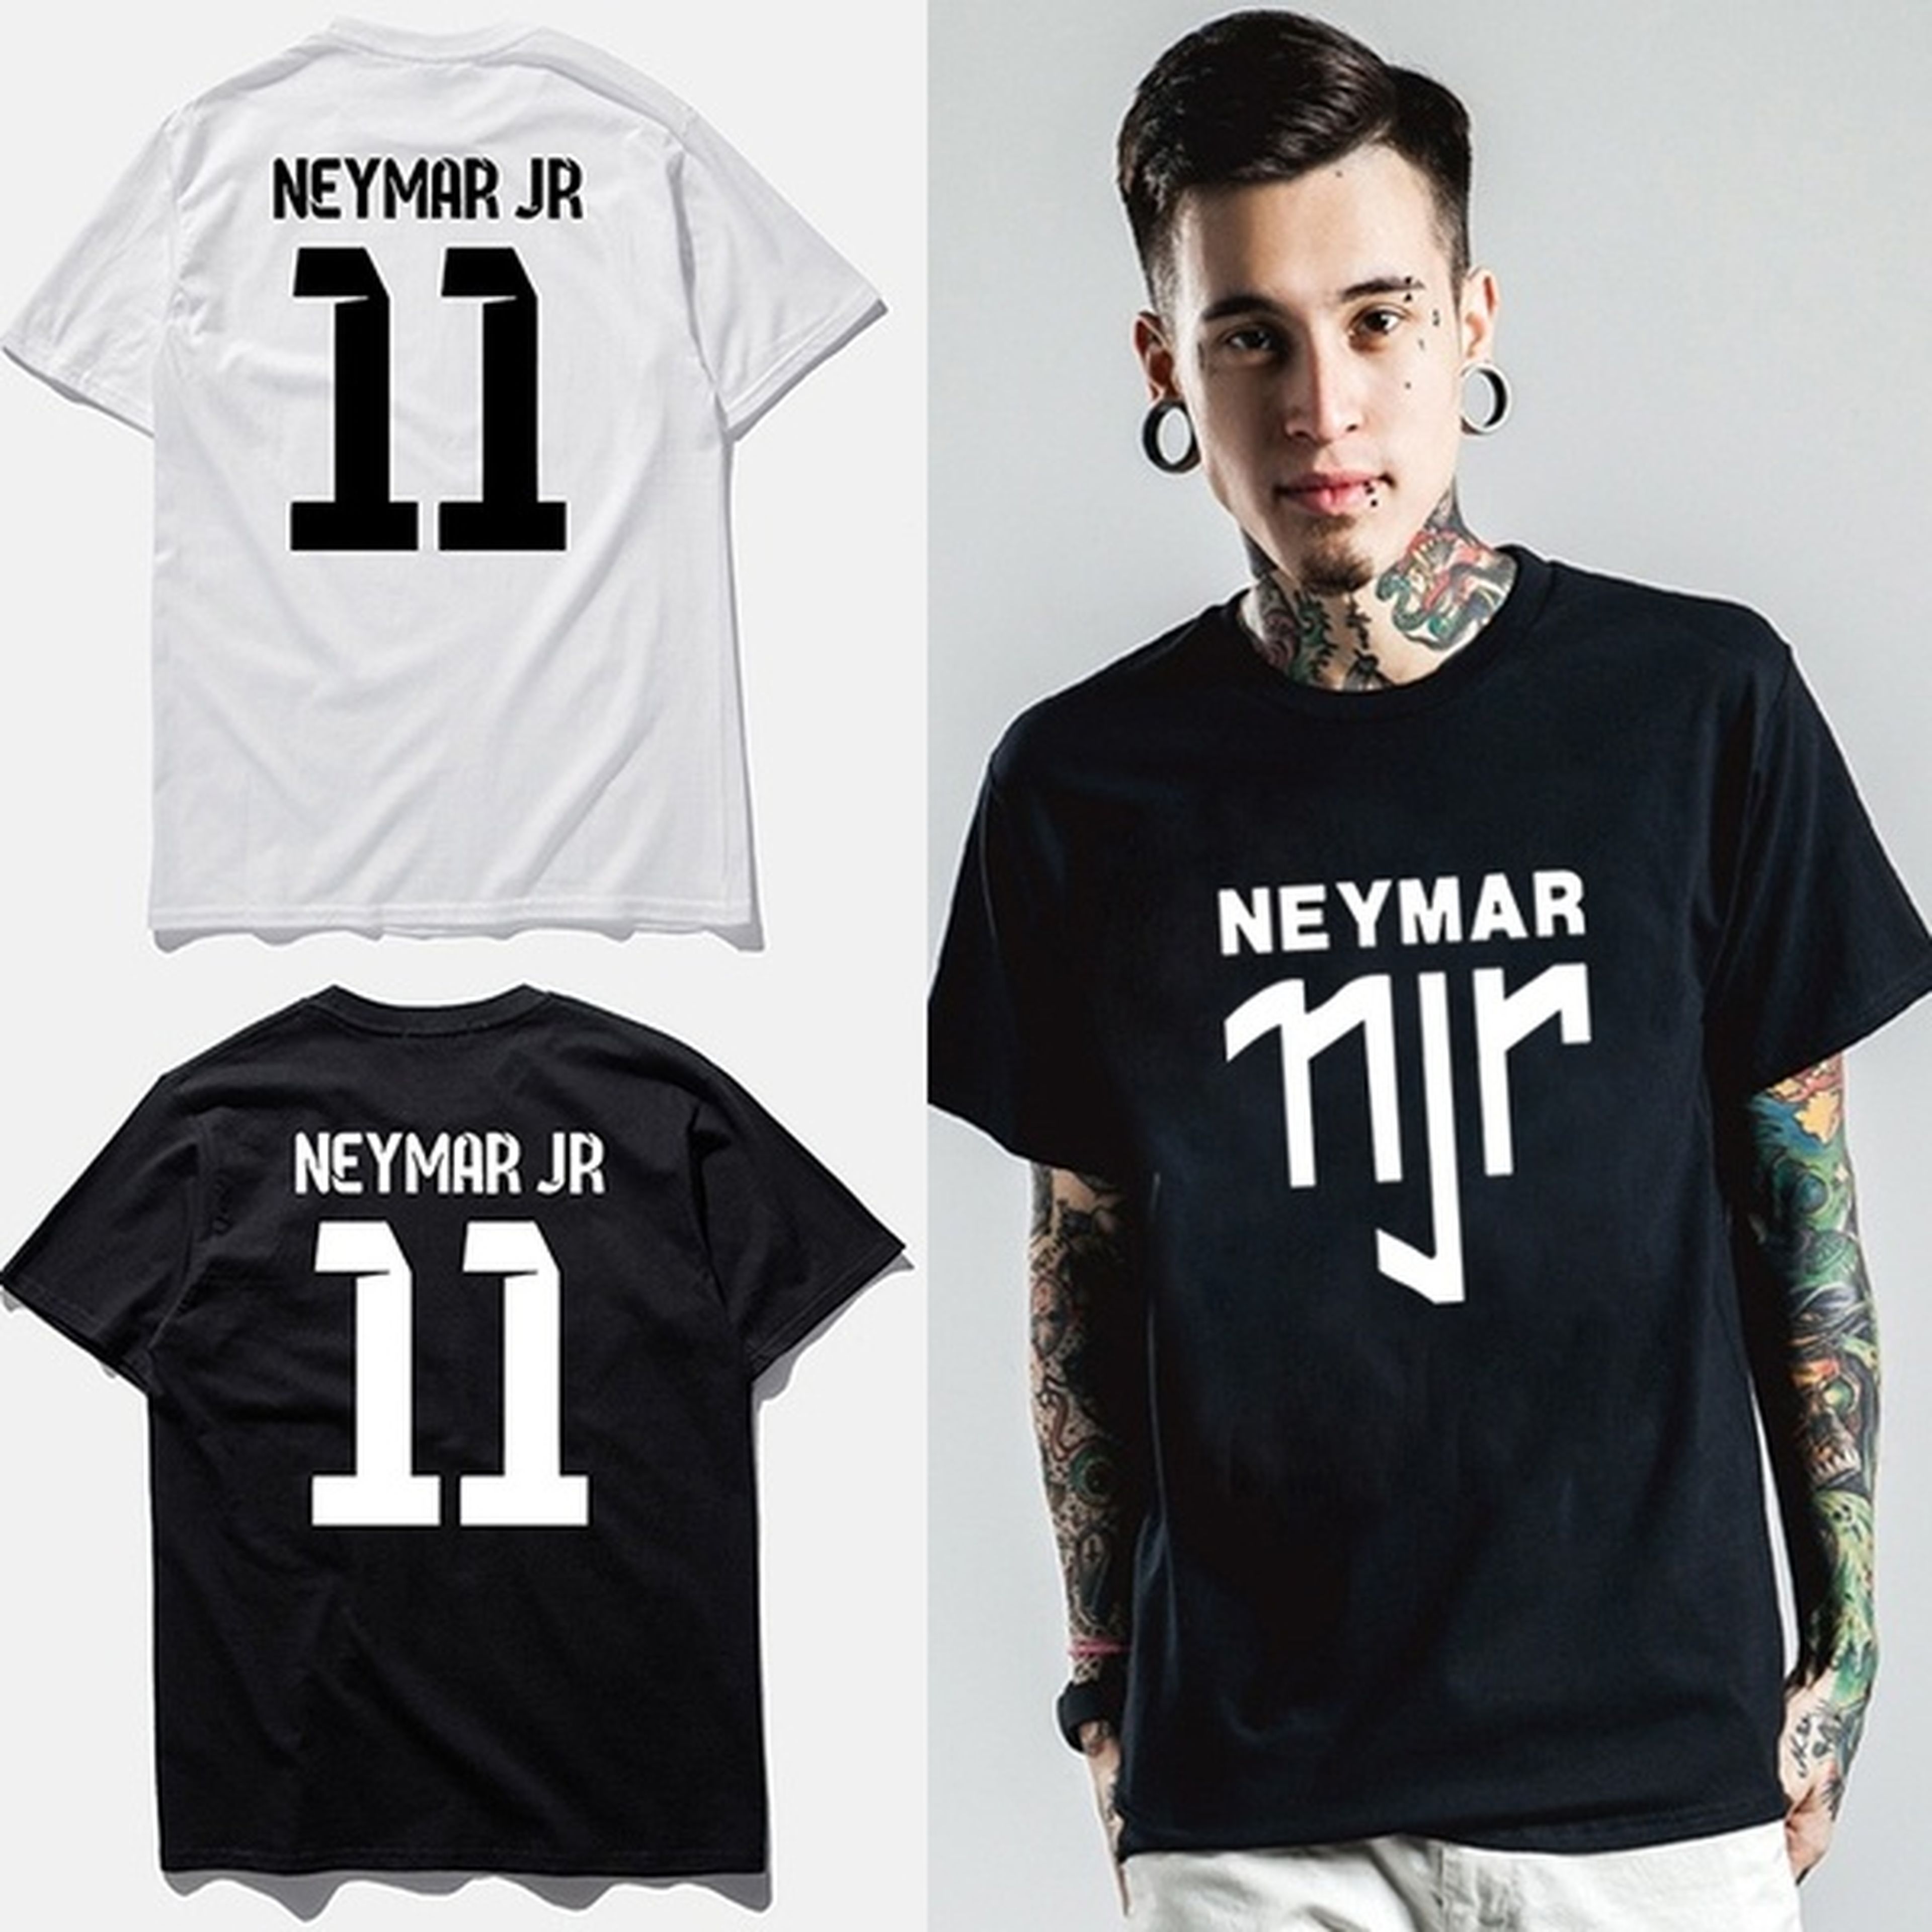 Productos de la marca Neymar Jr. a la venta en Wish